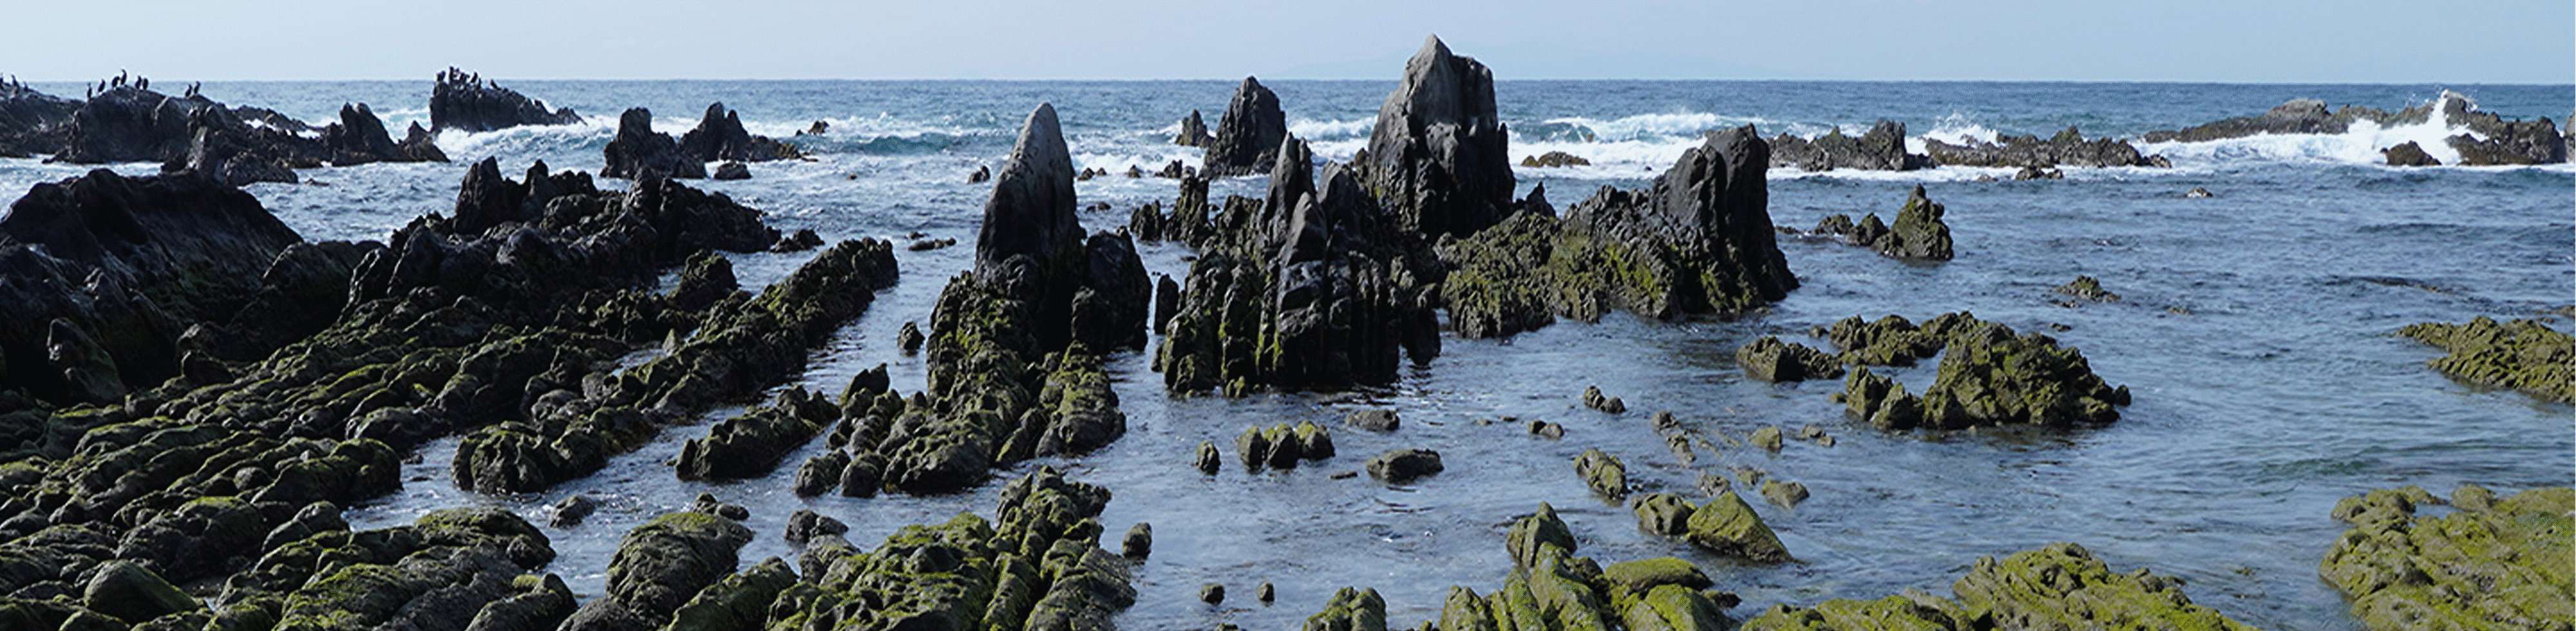 Bild einer Felsformation an der Küste